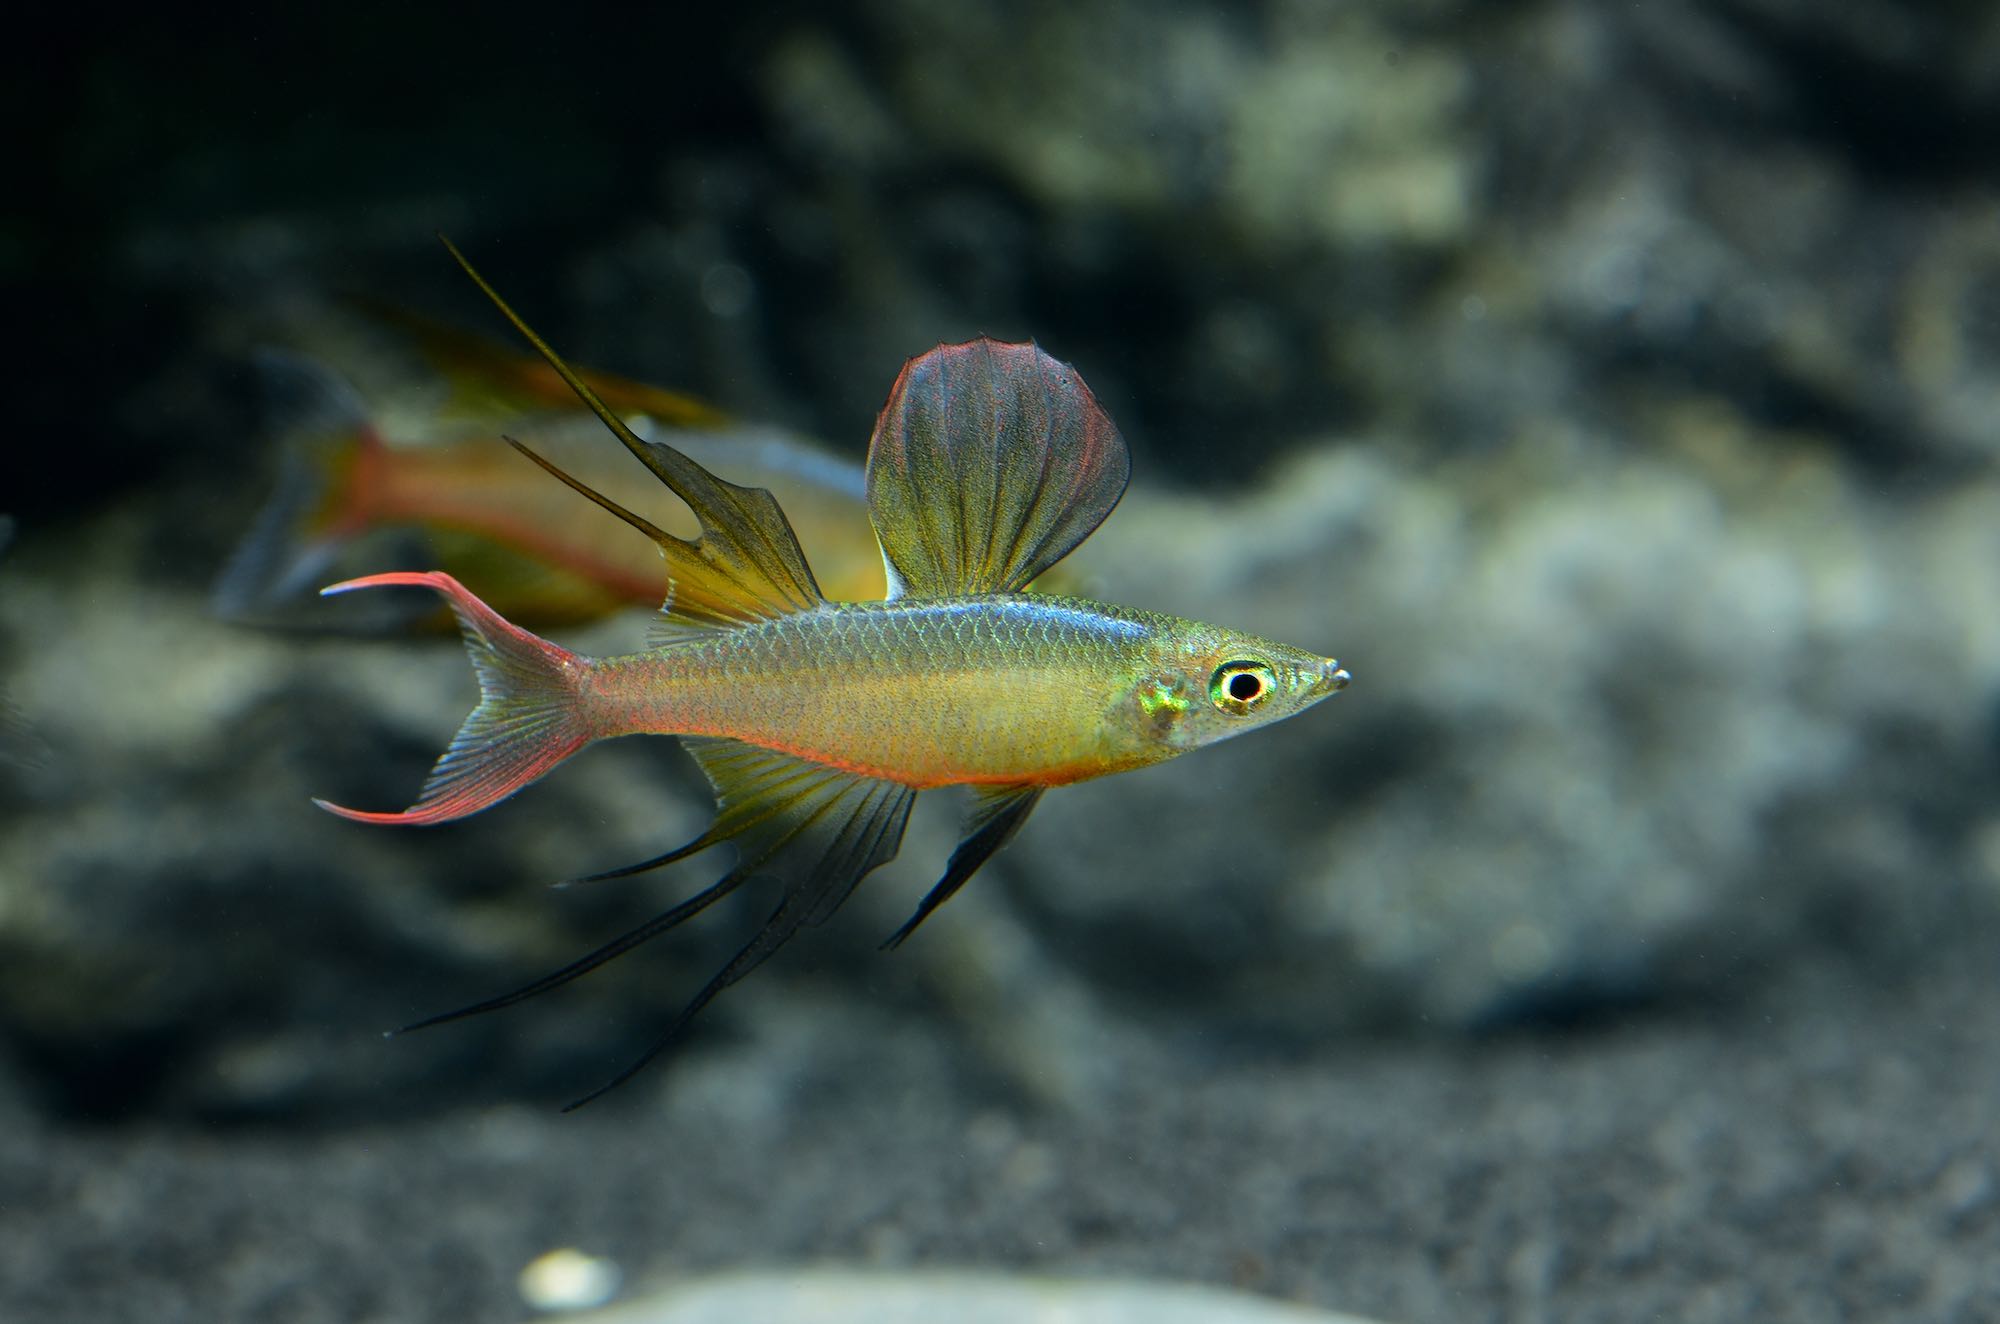 Prachtregenbogenfisch / Filigran-Regenbogenfisch (Iriatherina werneri)